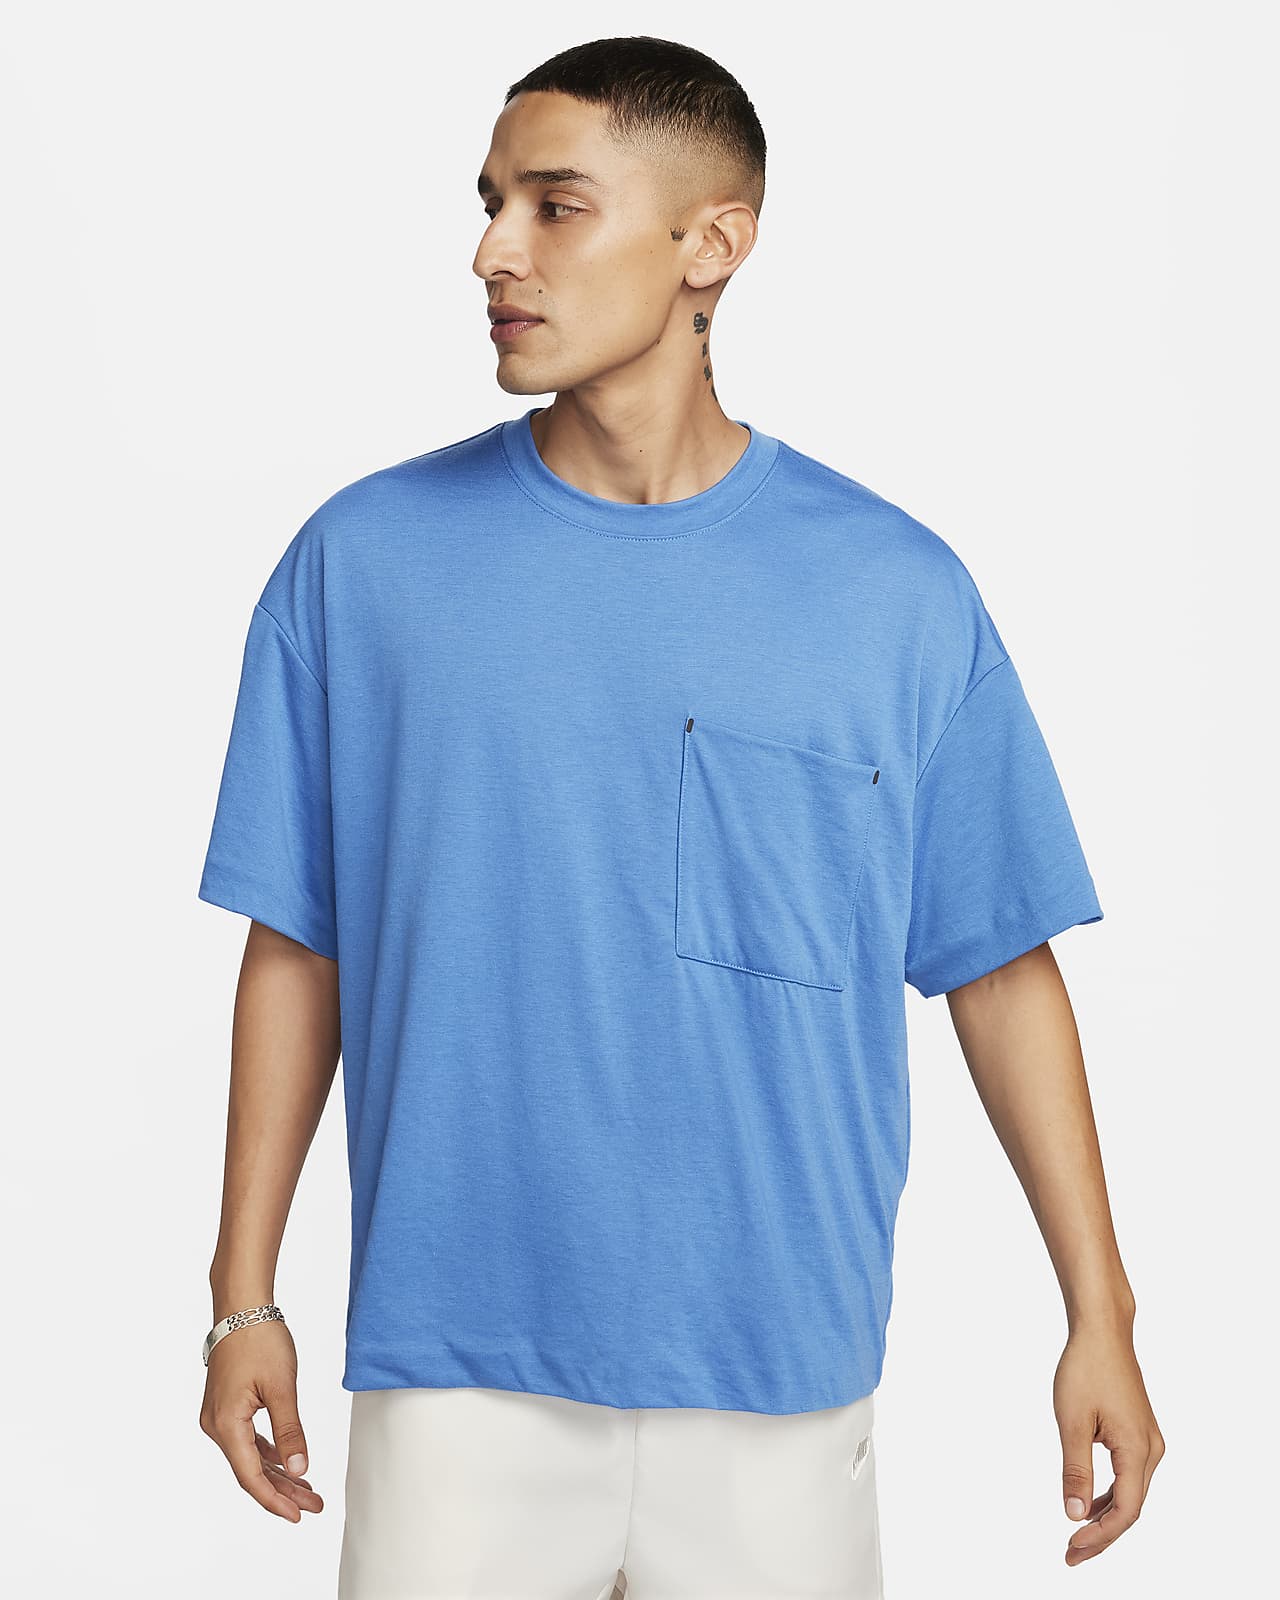 Buy Nike Yoga Printed Dri-fit T-shirt S - Blue At 50% Off